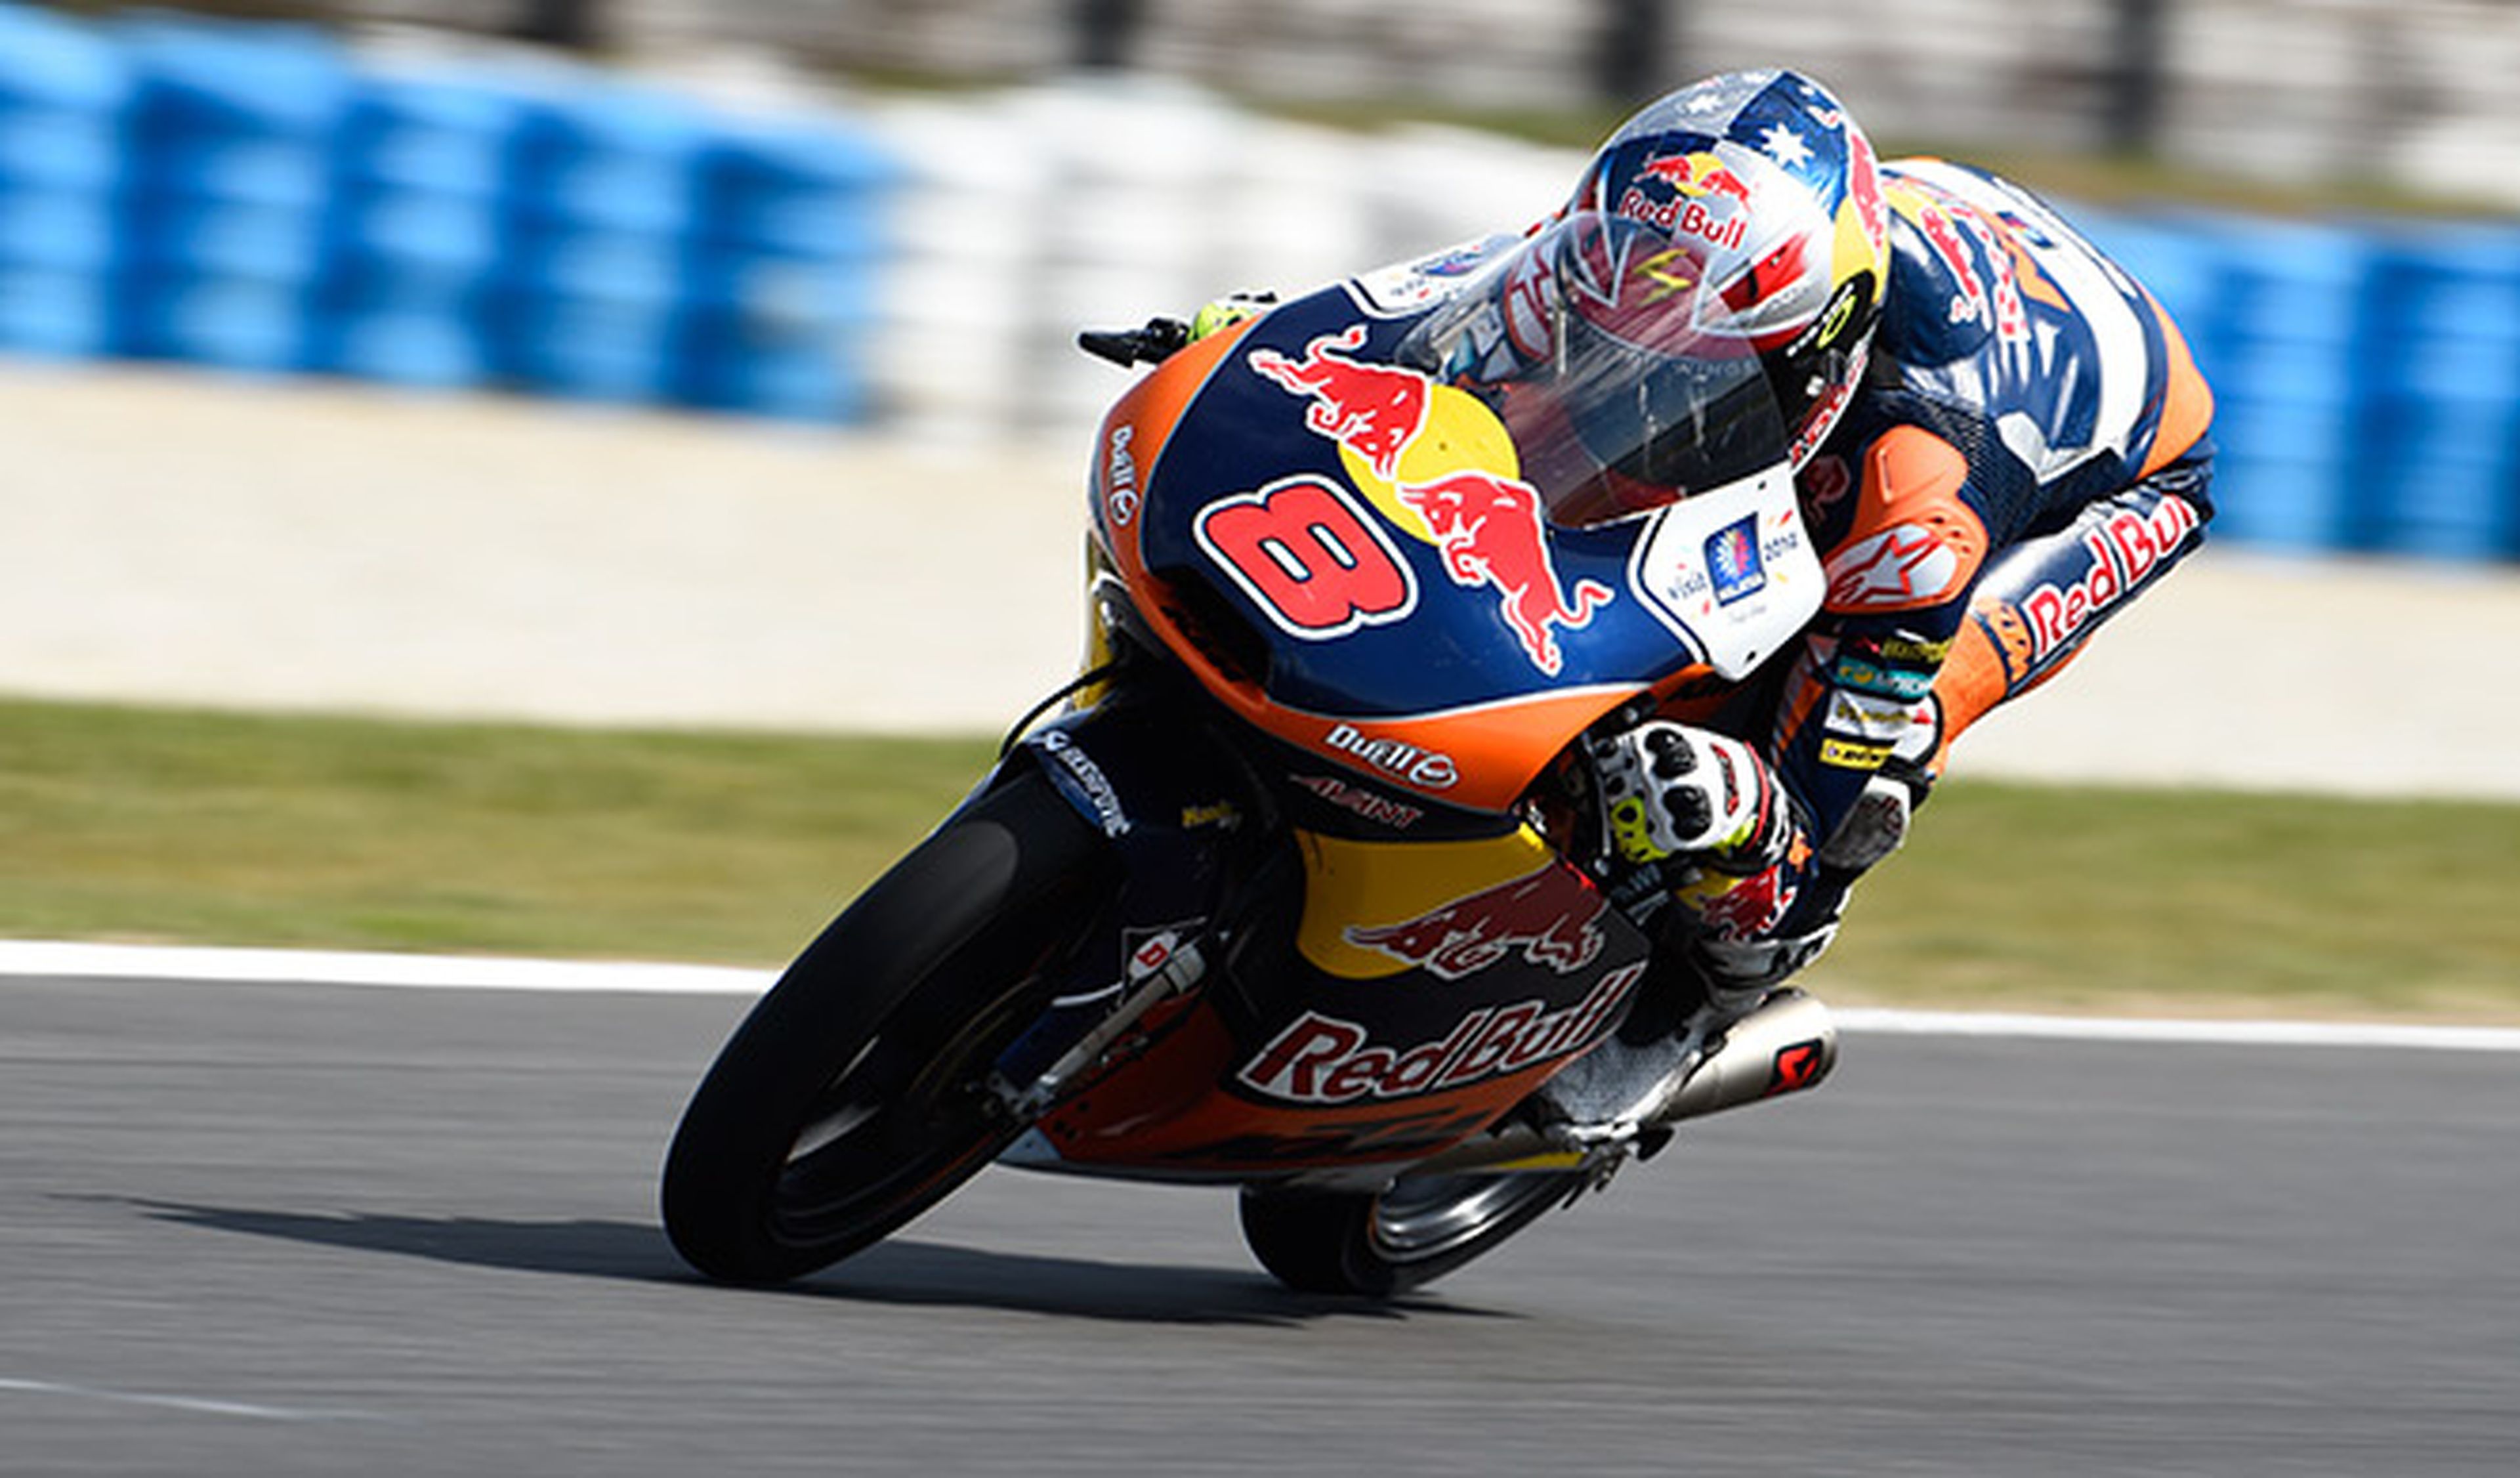 Clasificación Moto3 GP Malasia 2014: Miller mete presión